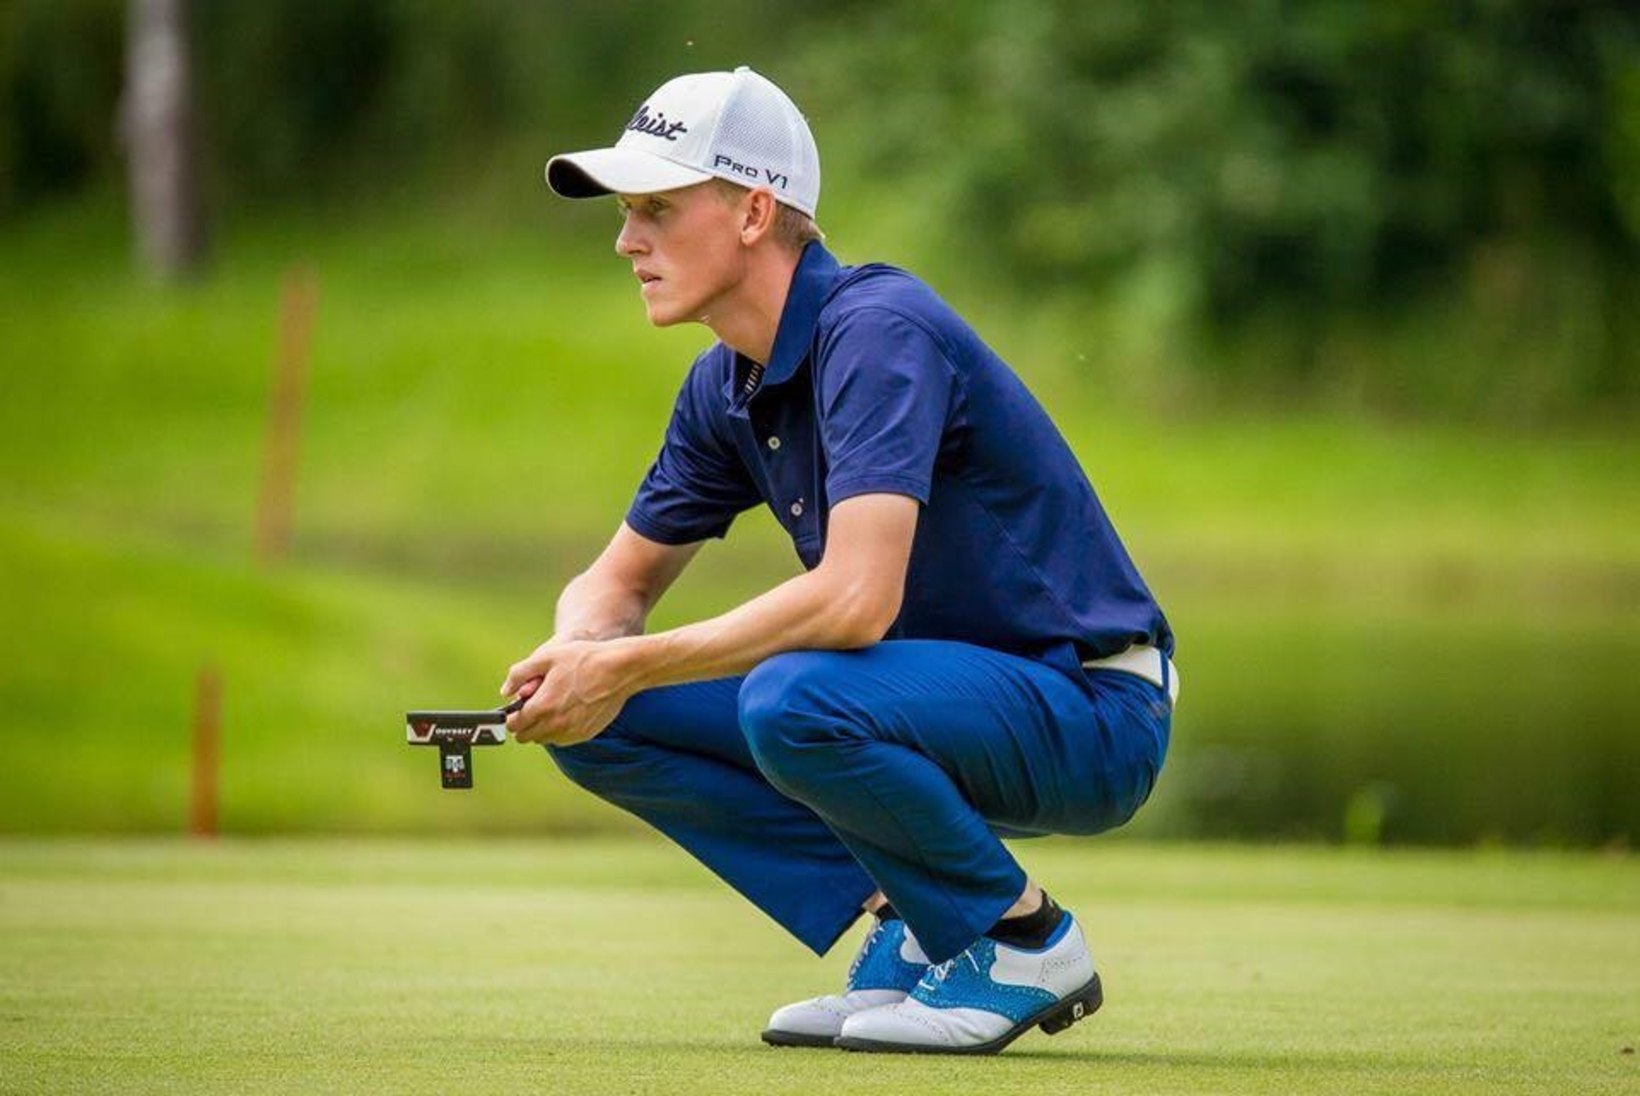 Eesti golfar osaleb 40 000 euro suuruse auhinnafondiga võistlusel